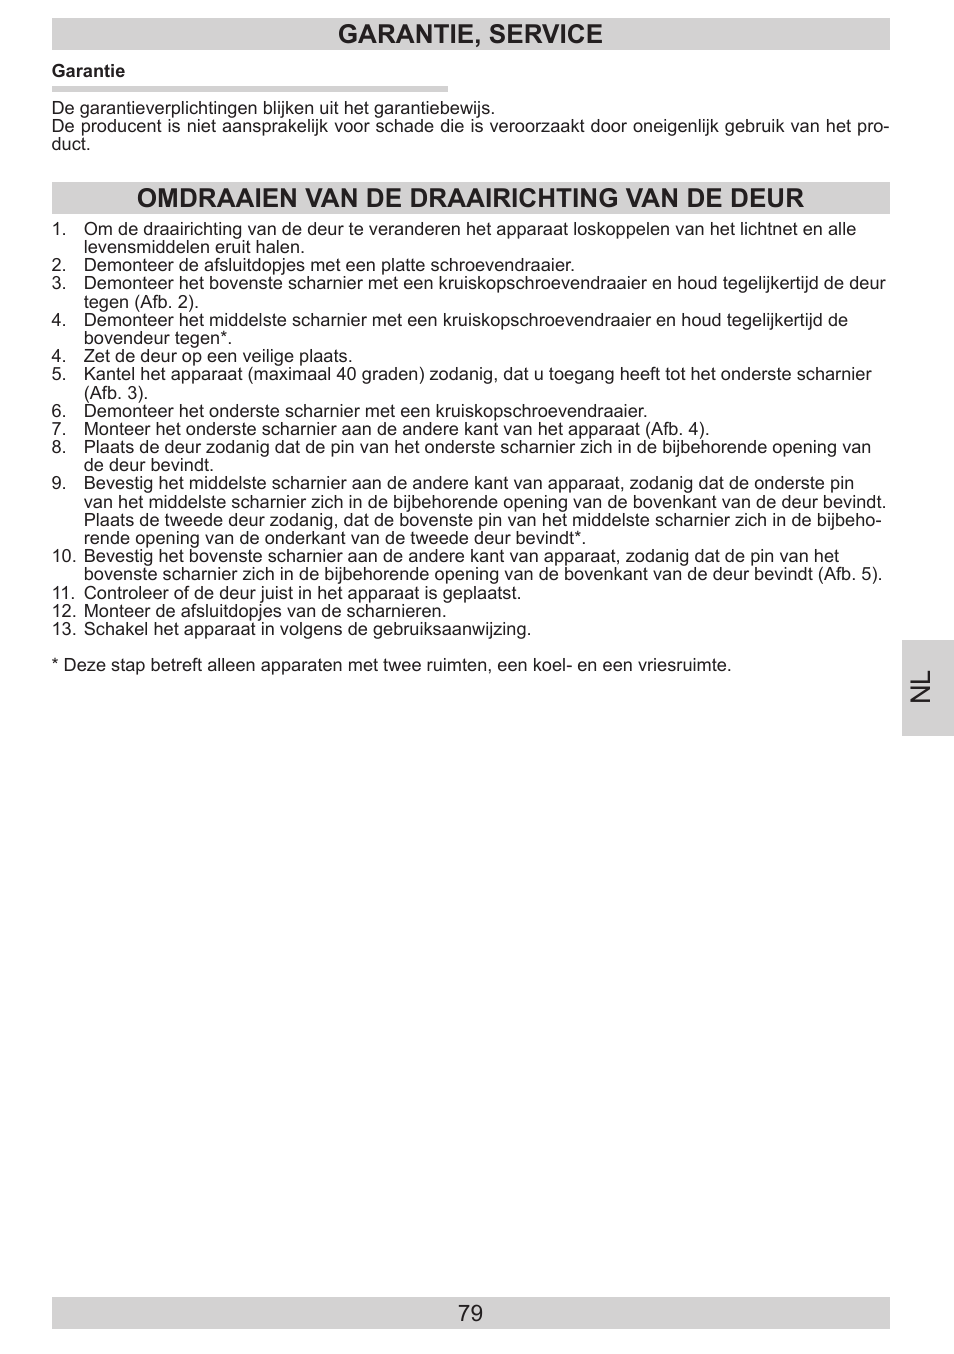 Garantie, service, Omdraaien van de draairichting van de deur | AMICA EVKS  16404 DE User Manual | Page 79 / 84